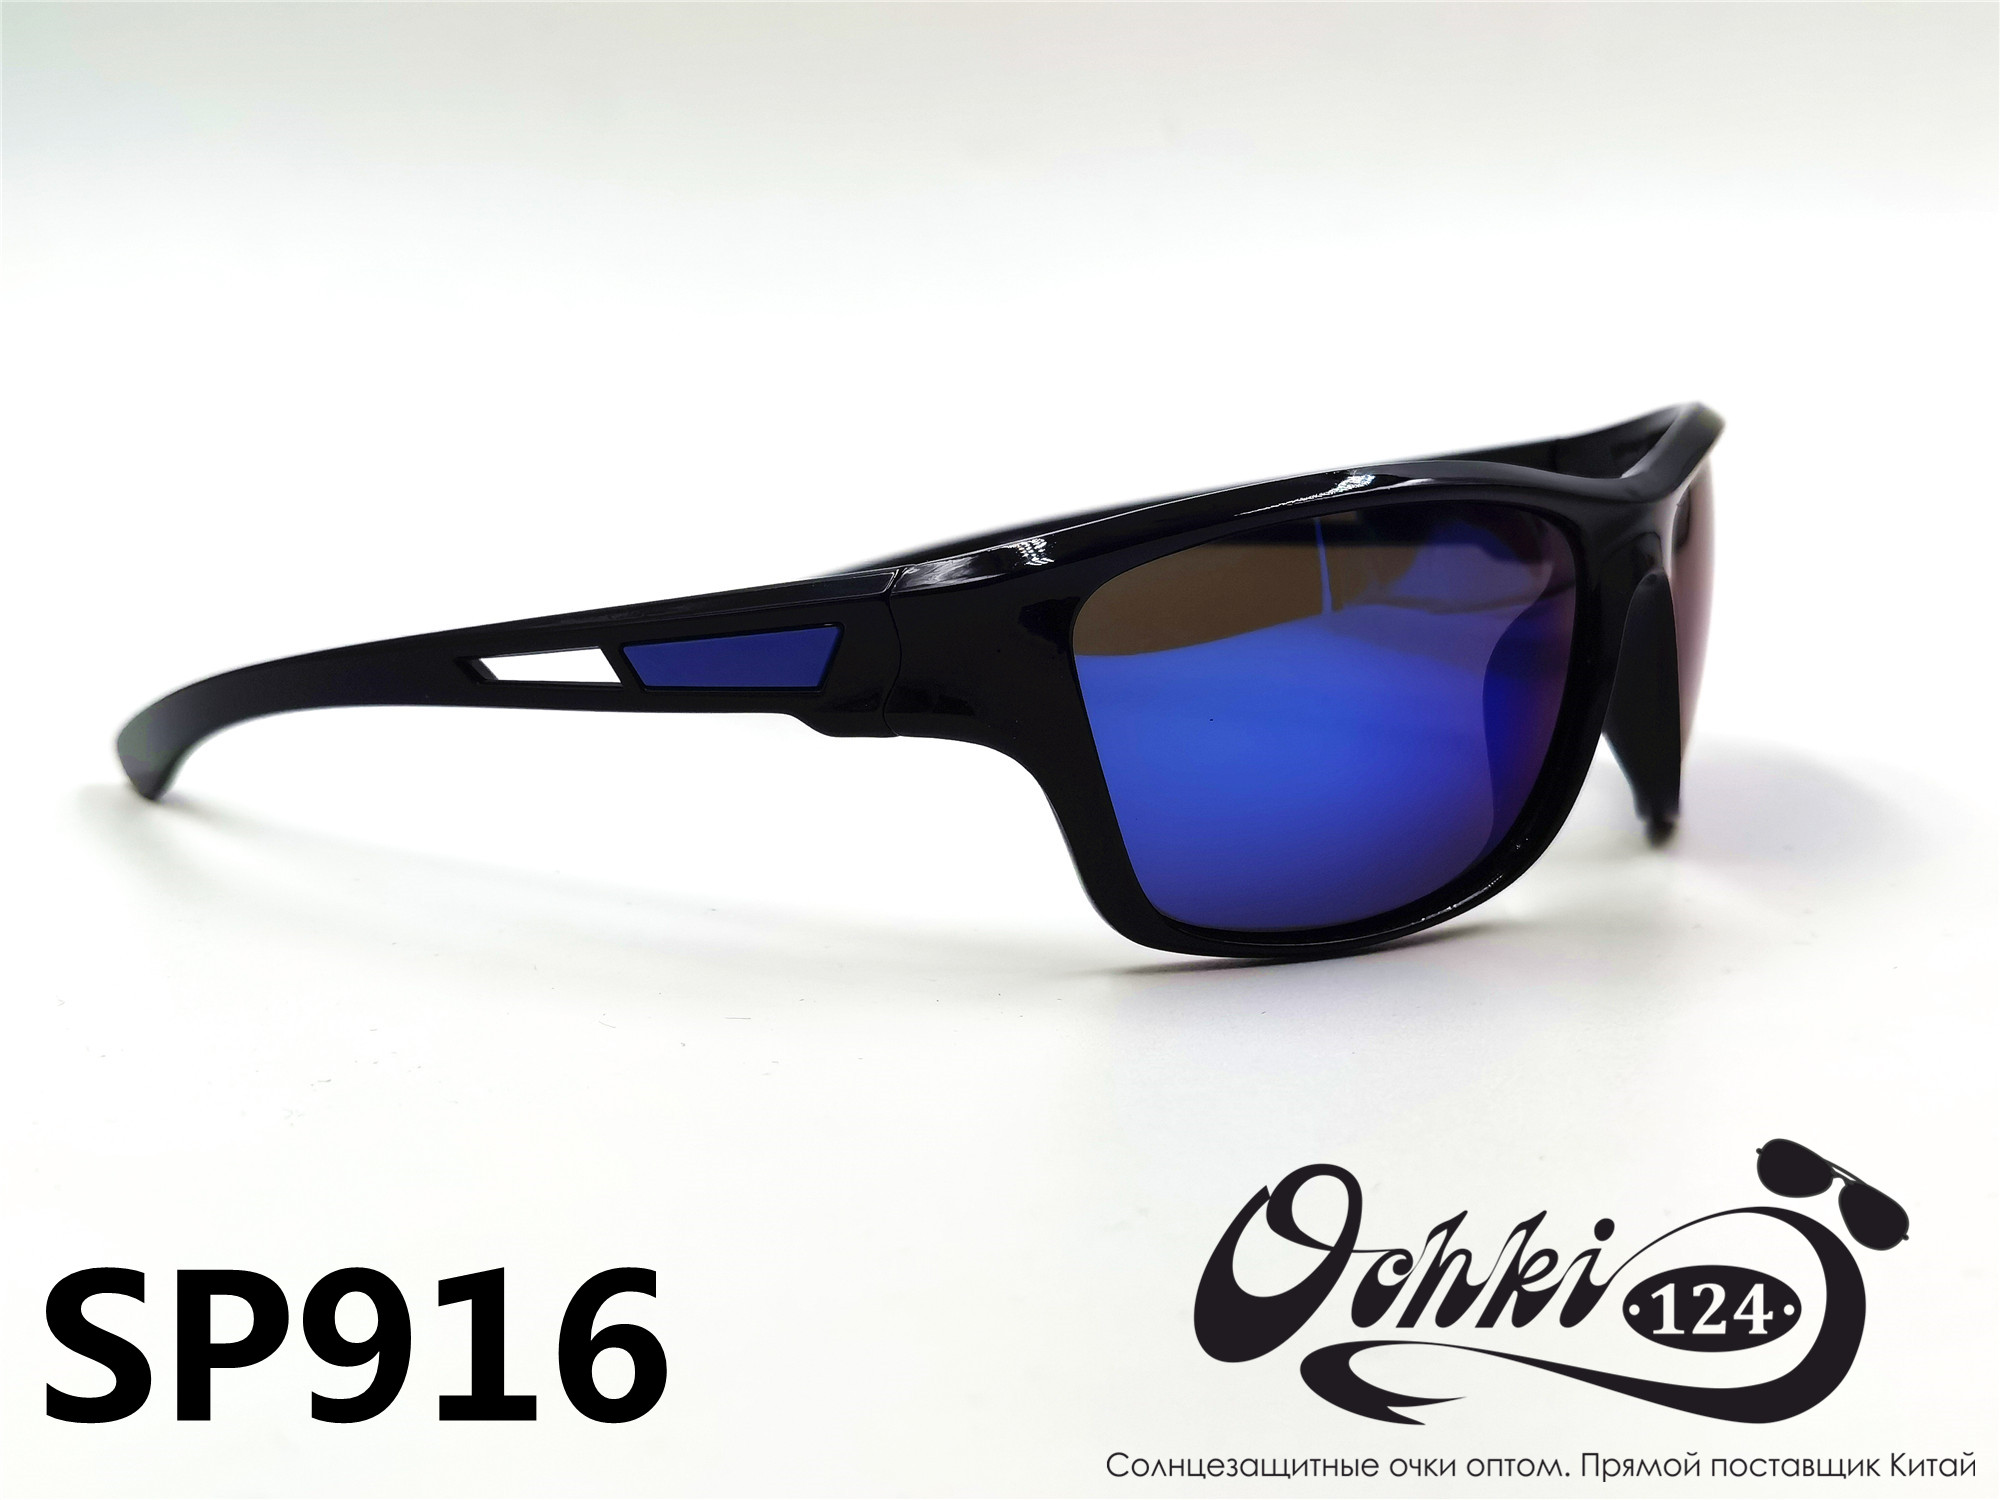  Солнцезащитные очки картинка 2022 Мужские спорт Поляризованные Materice PS916-8 